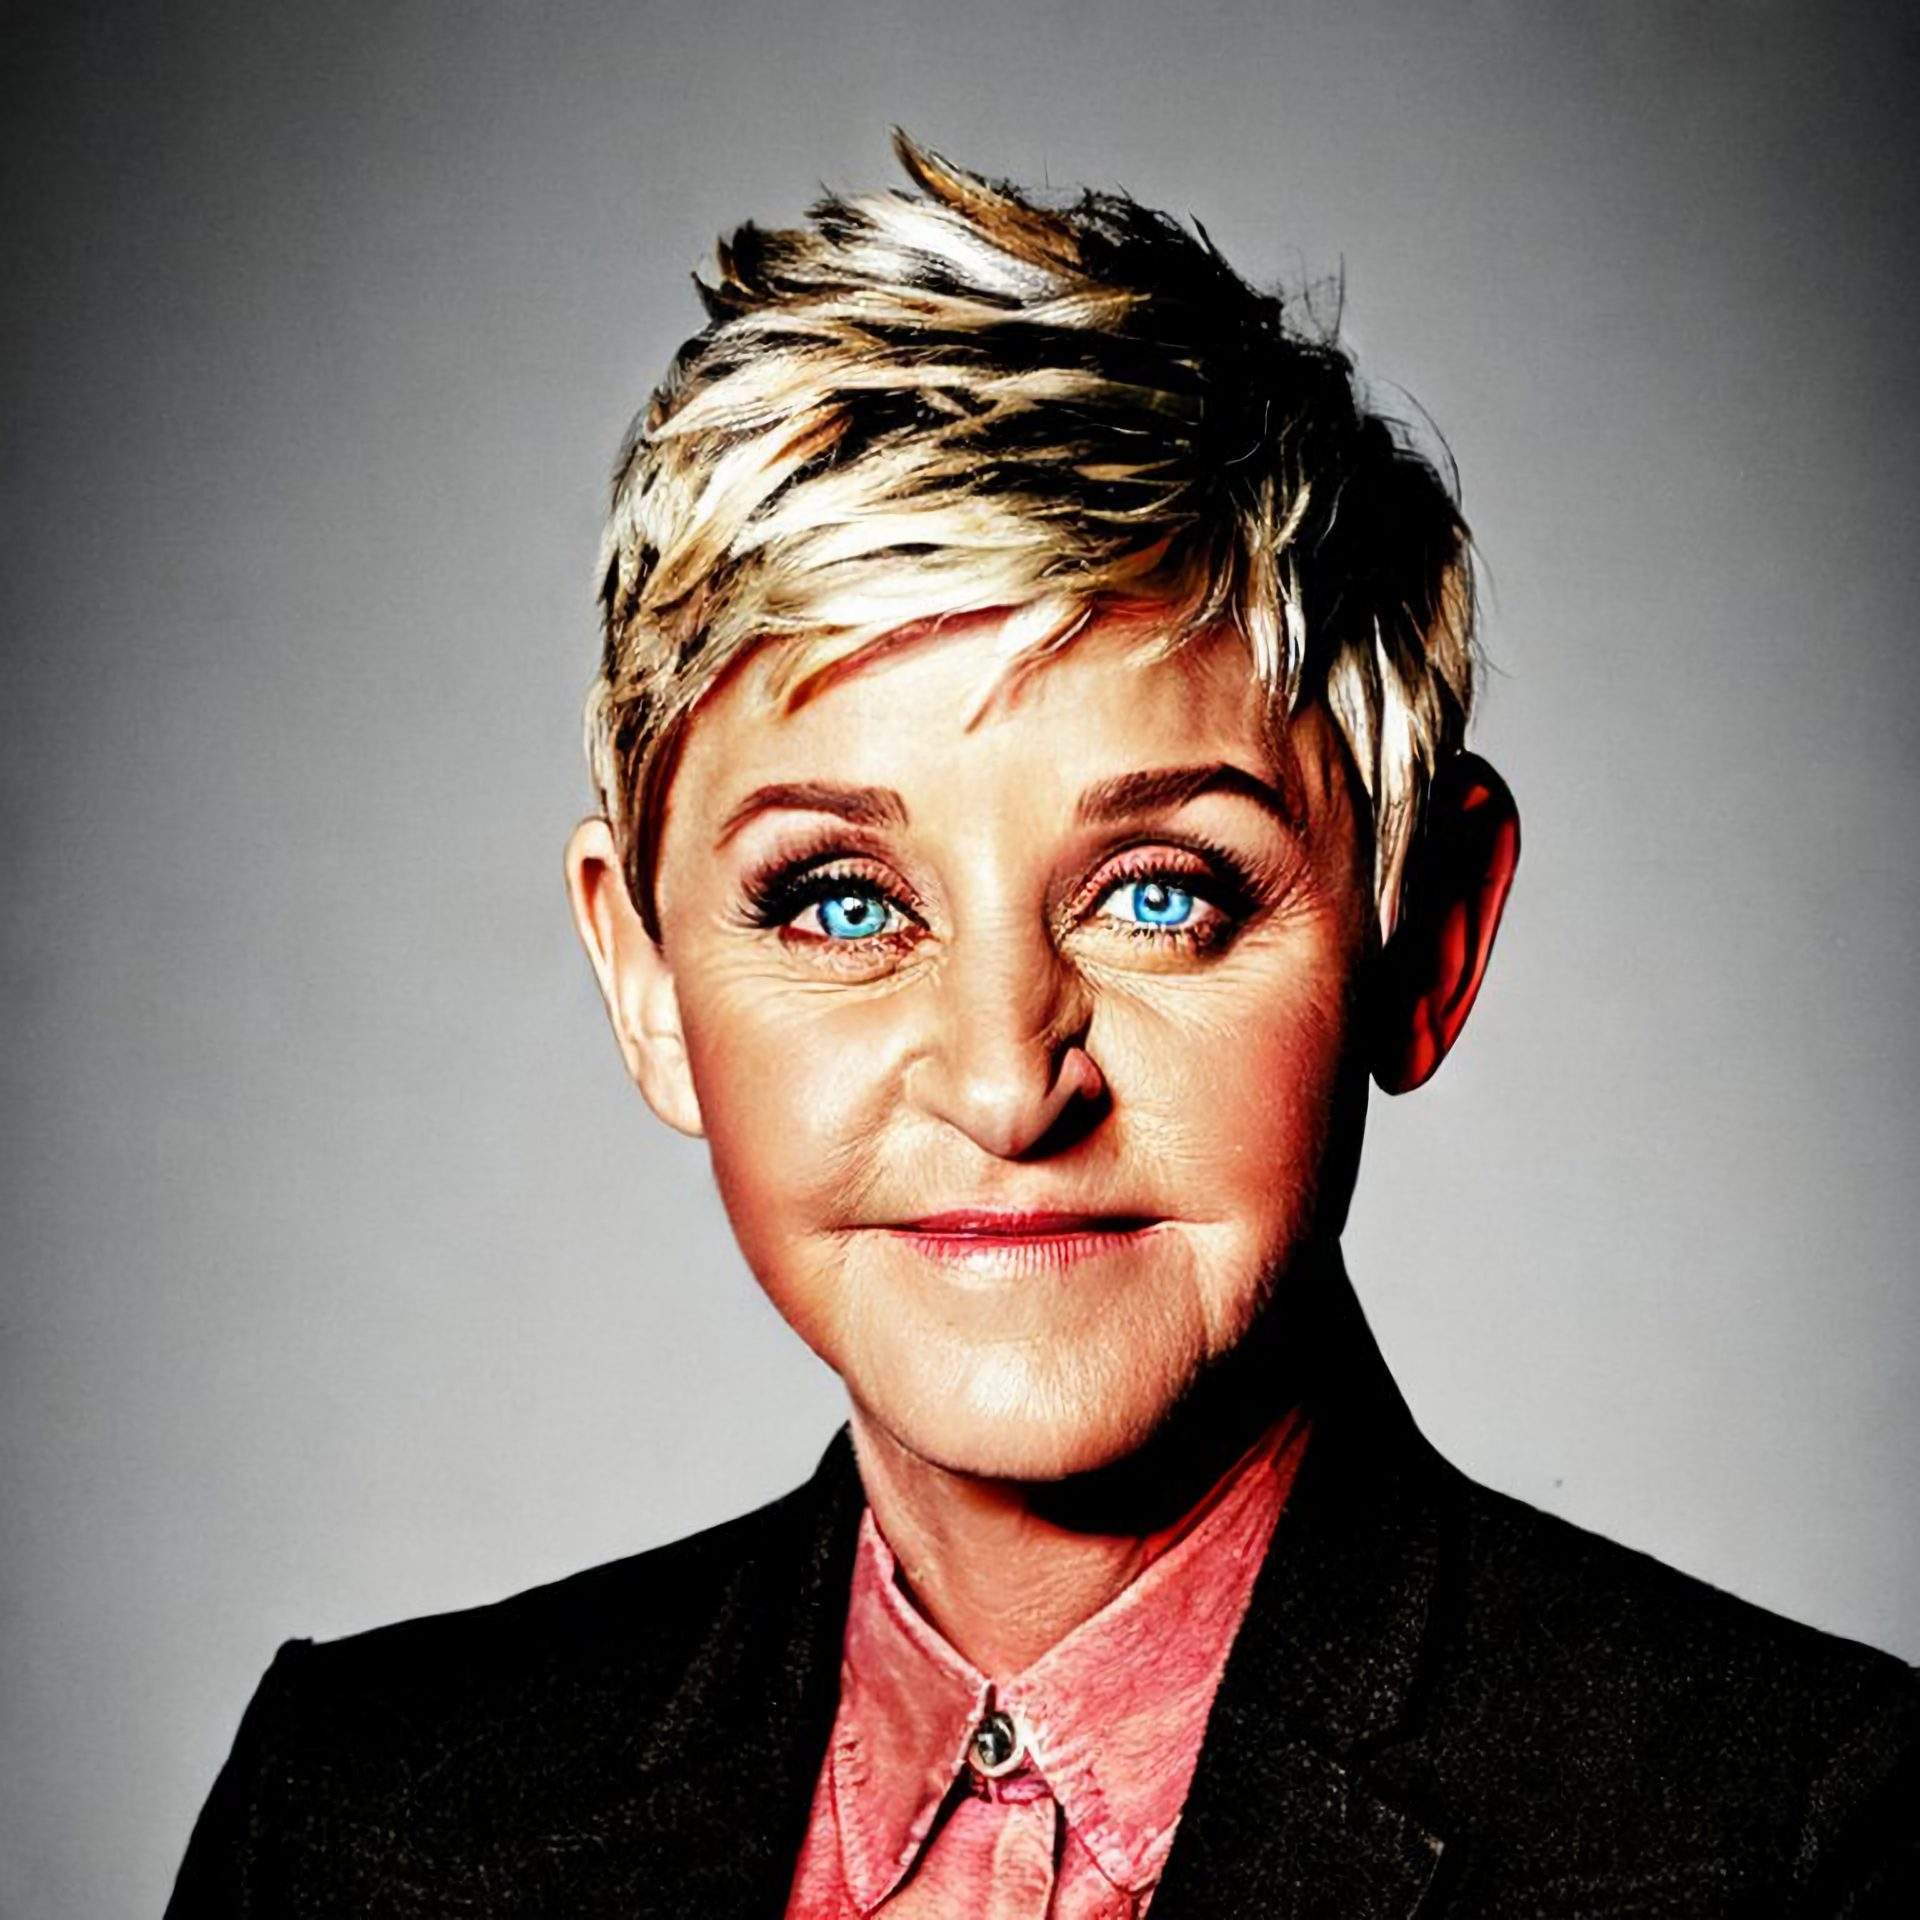 Iconic portrait of Ellen DeGeneres